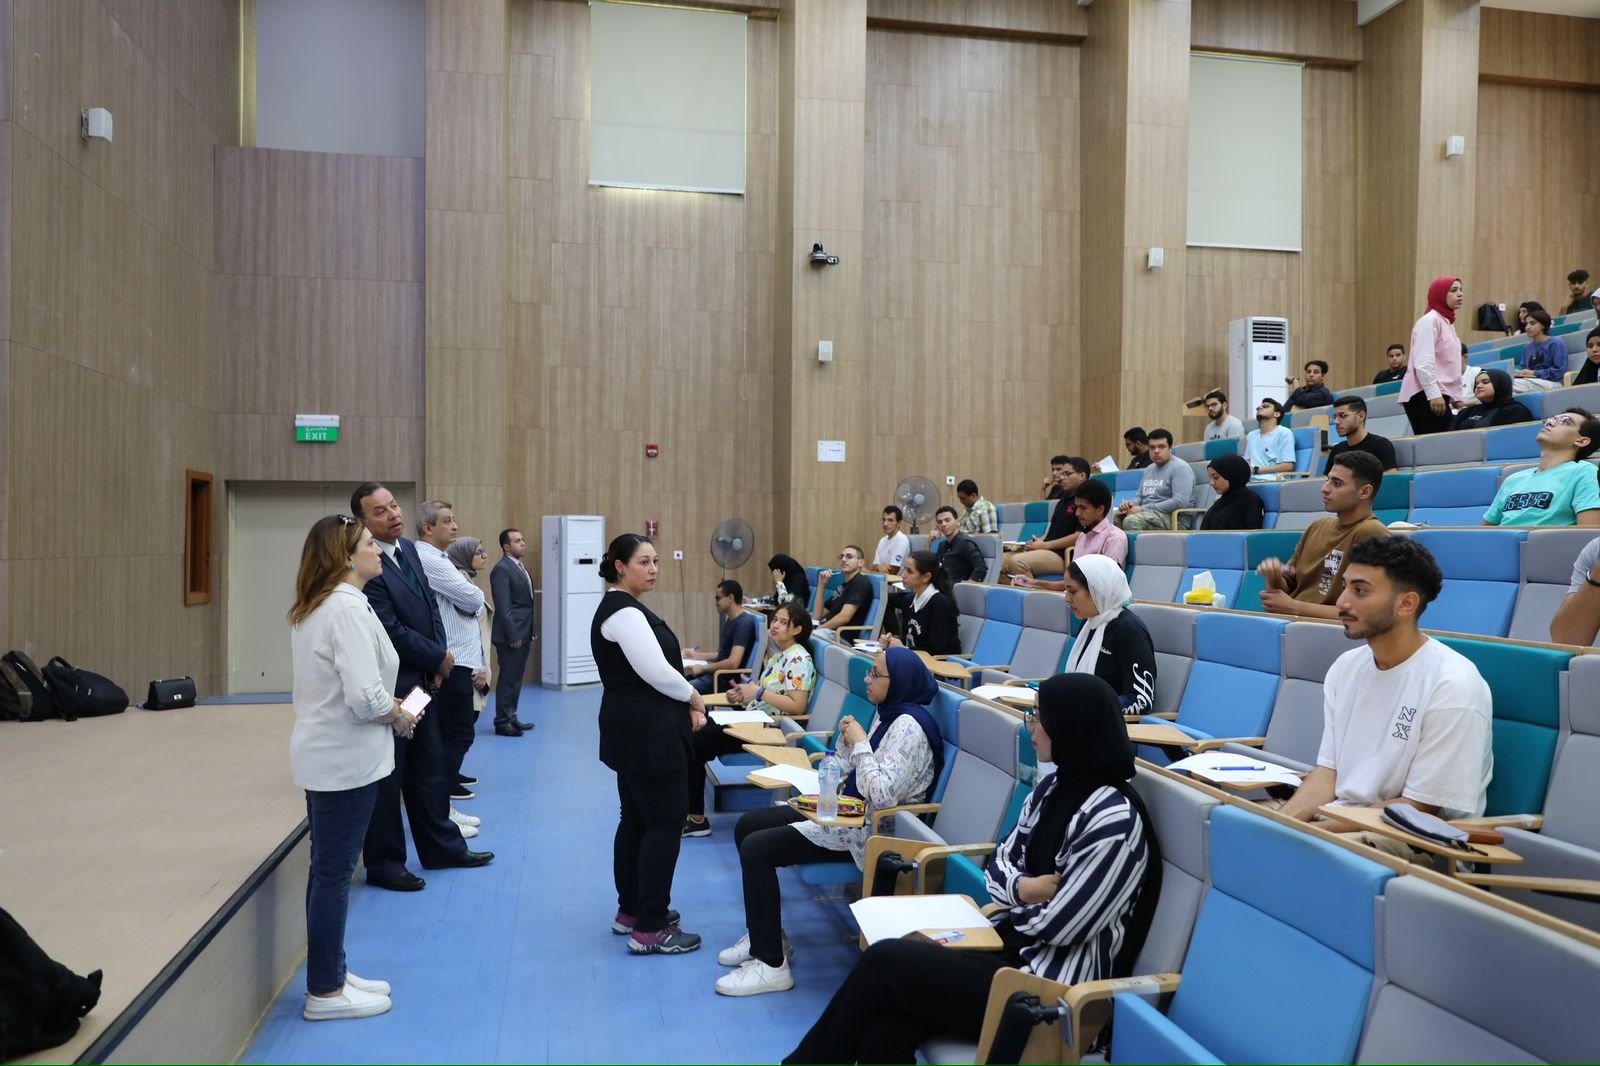 اختبارات نصف الفصل الدراسي داخل جامعة المنصورة الجديدة